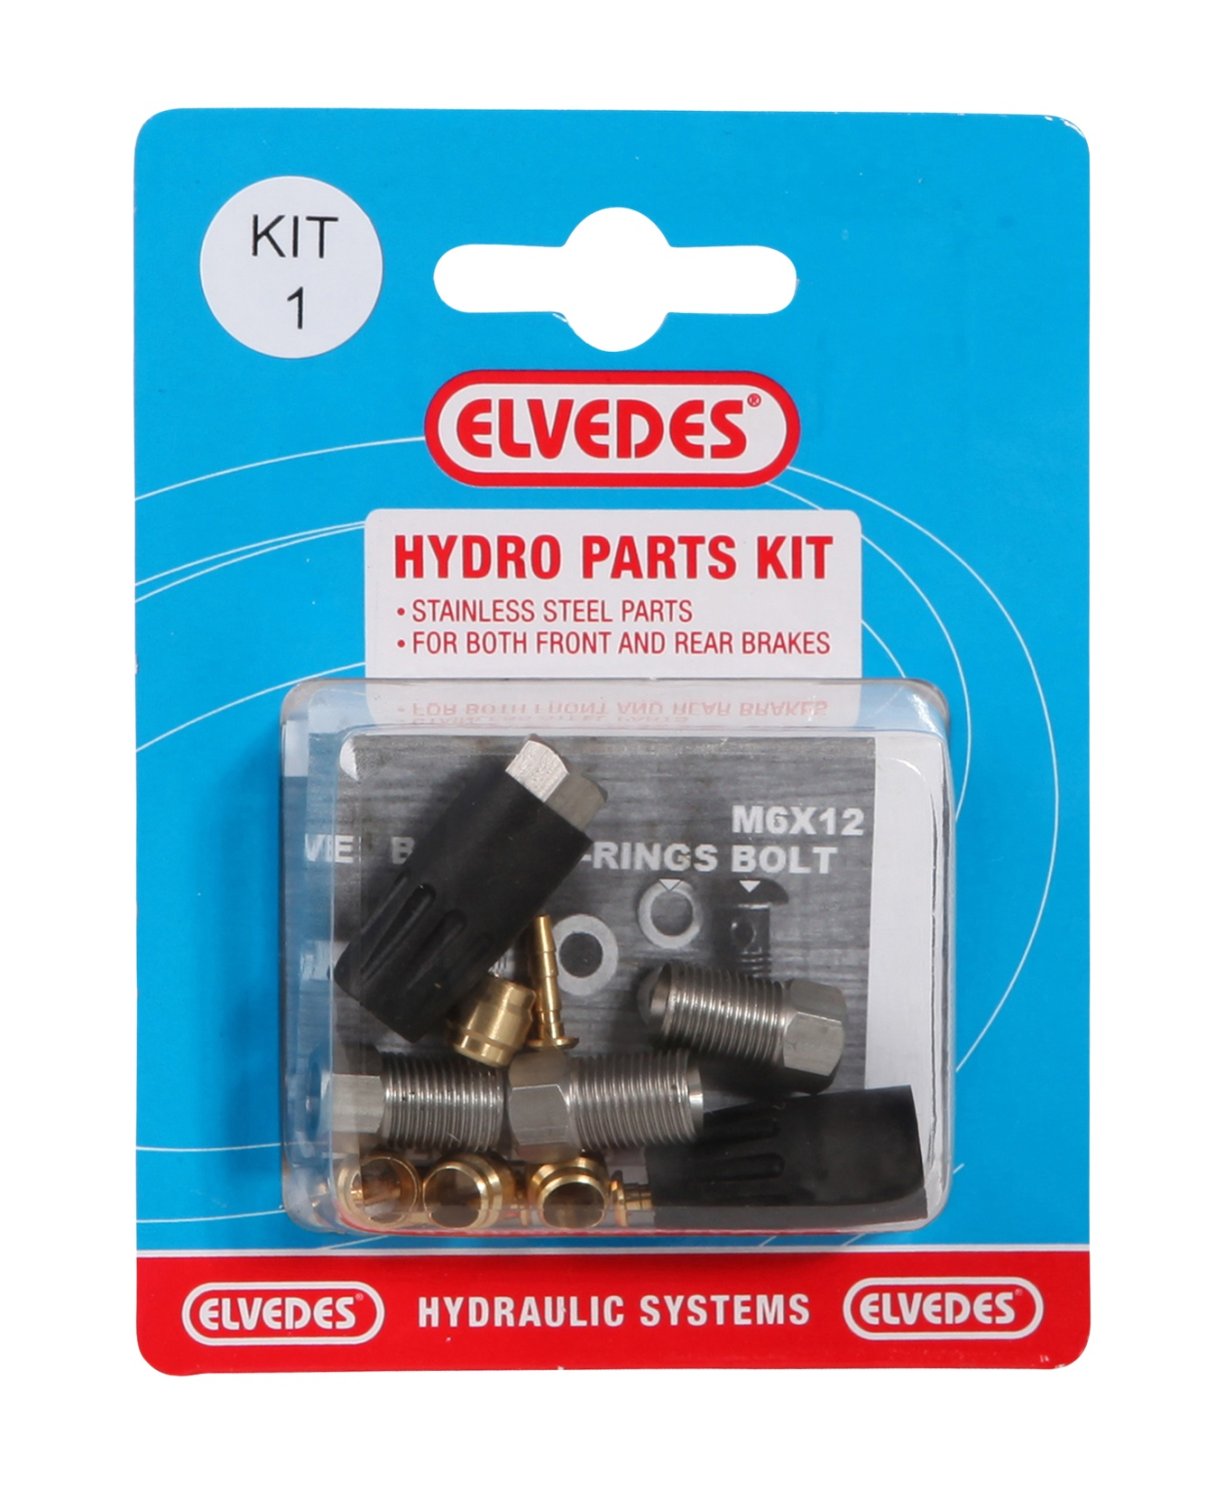 Велосипедный набор для гидролинии ELVEDES Kit 1 (М8 + М8), для переднего и заднего тормозов , для Shimano, 2011012 нож elvedes для профессионального резака для гидролинии сменный 2019124